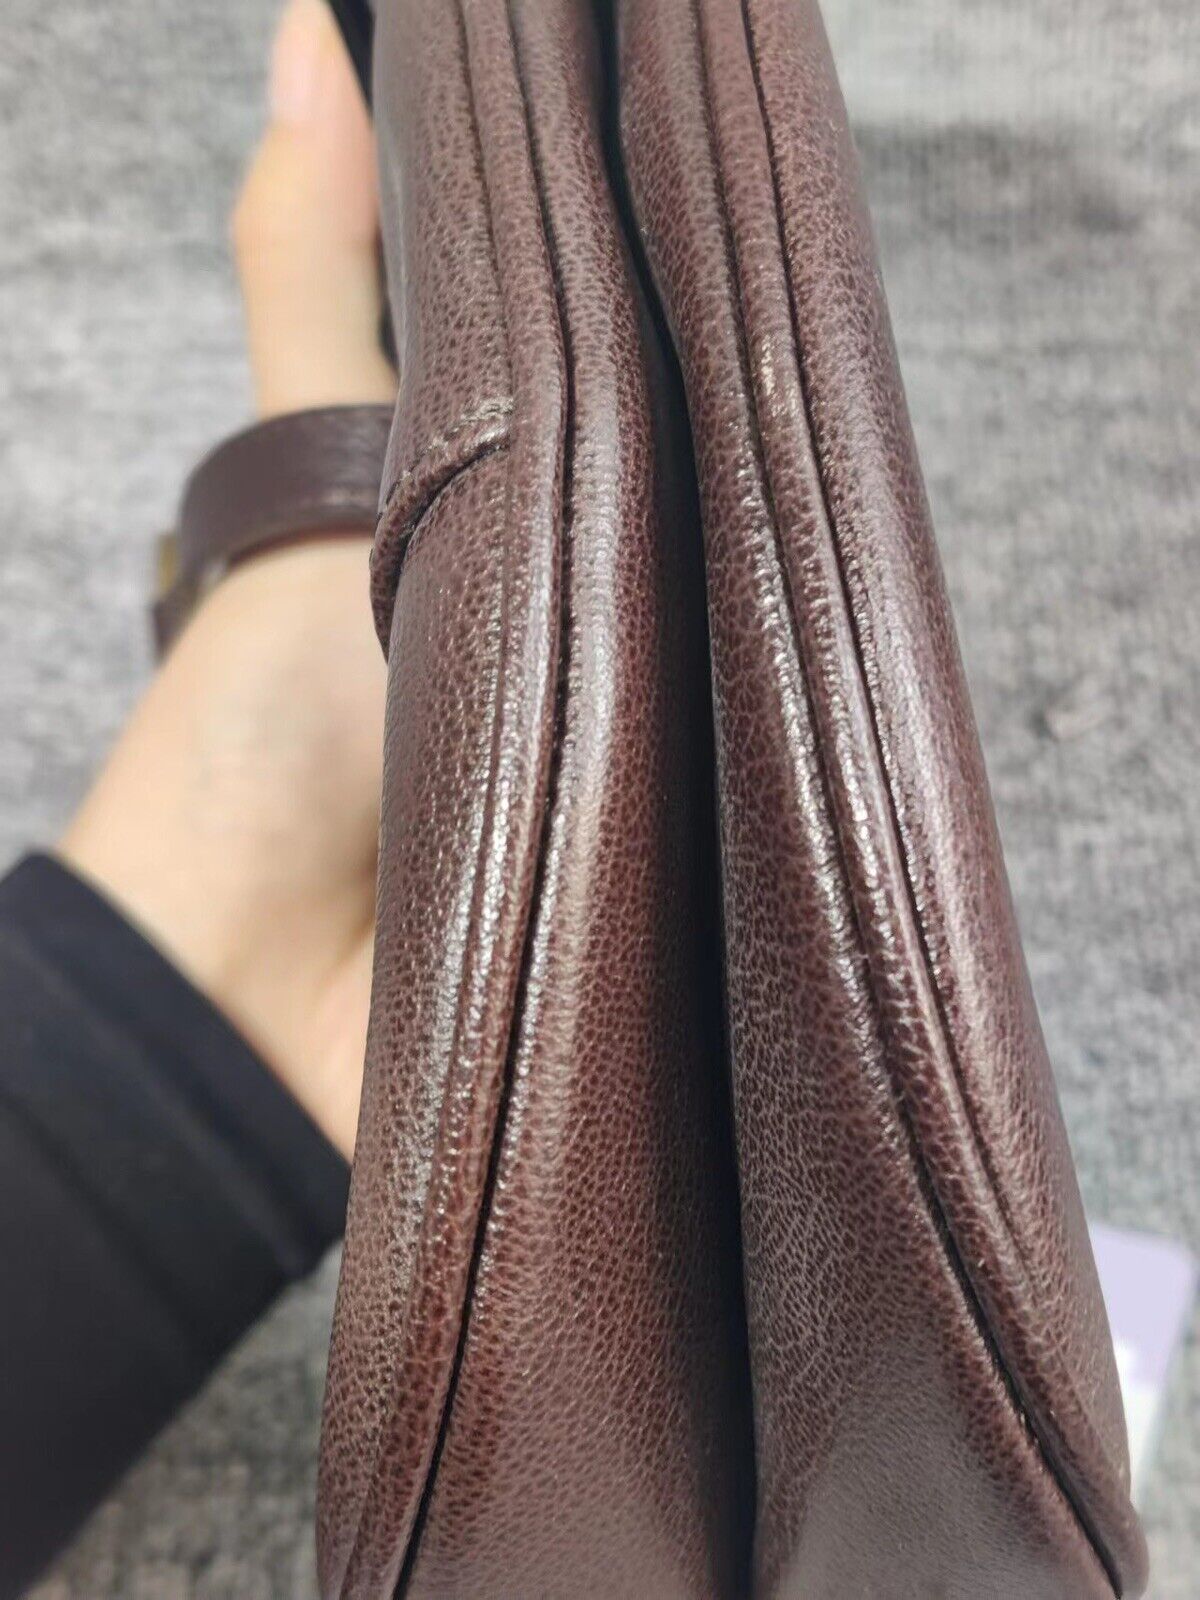 Christian Dior Vintage Leather Double Saddle Bag - Brown Shoulder